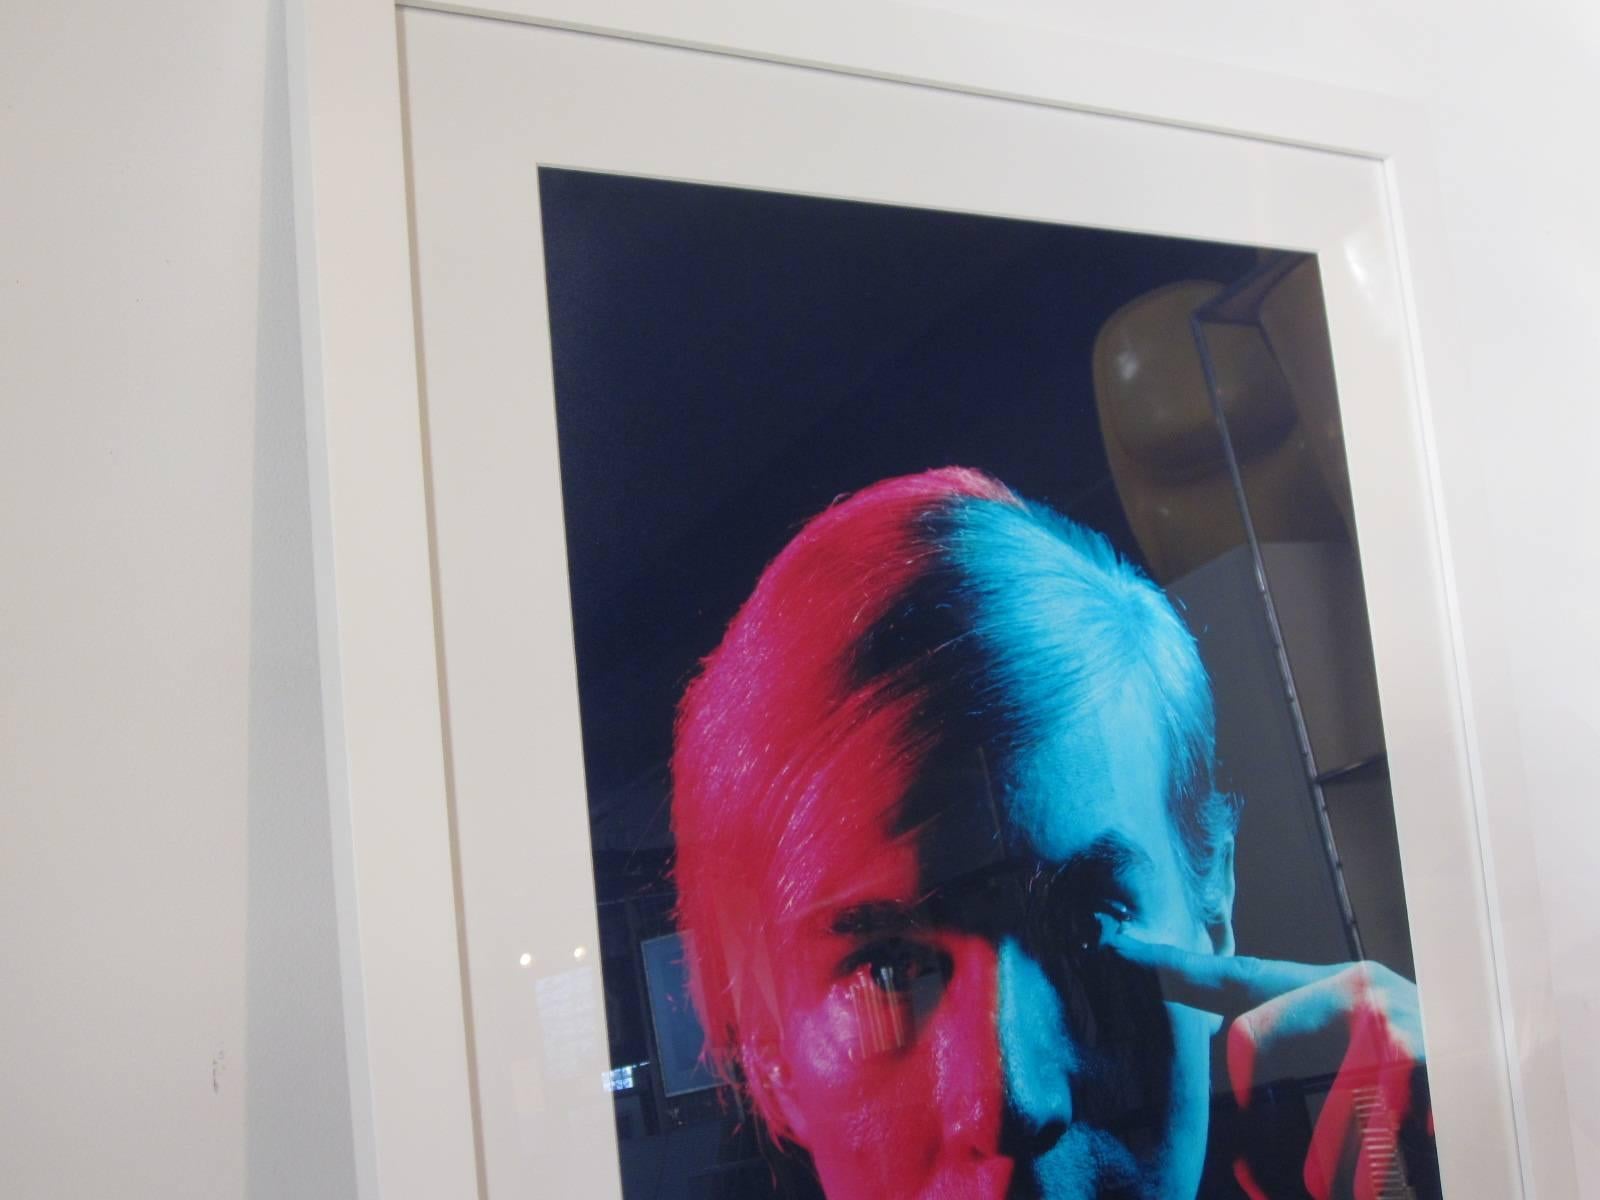 Das Porträt von Andy Warhol wurde 1968 von dem Meisterfotografen und -drucker Philippe Halsman (1906-1979) aufgenommen und 1989 in einer Auflage von 100 Exemplaren mit acht chromogenen Farbdrucken hergestellt, die ausverkauft waren. Dieser Druck ist